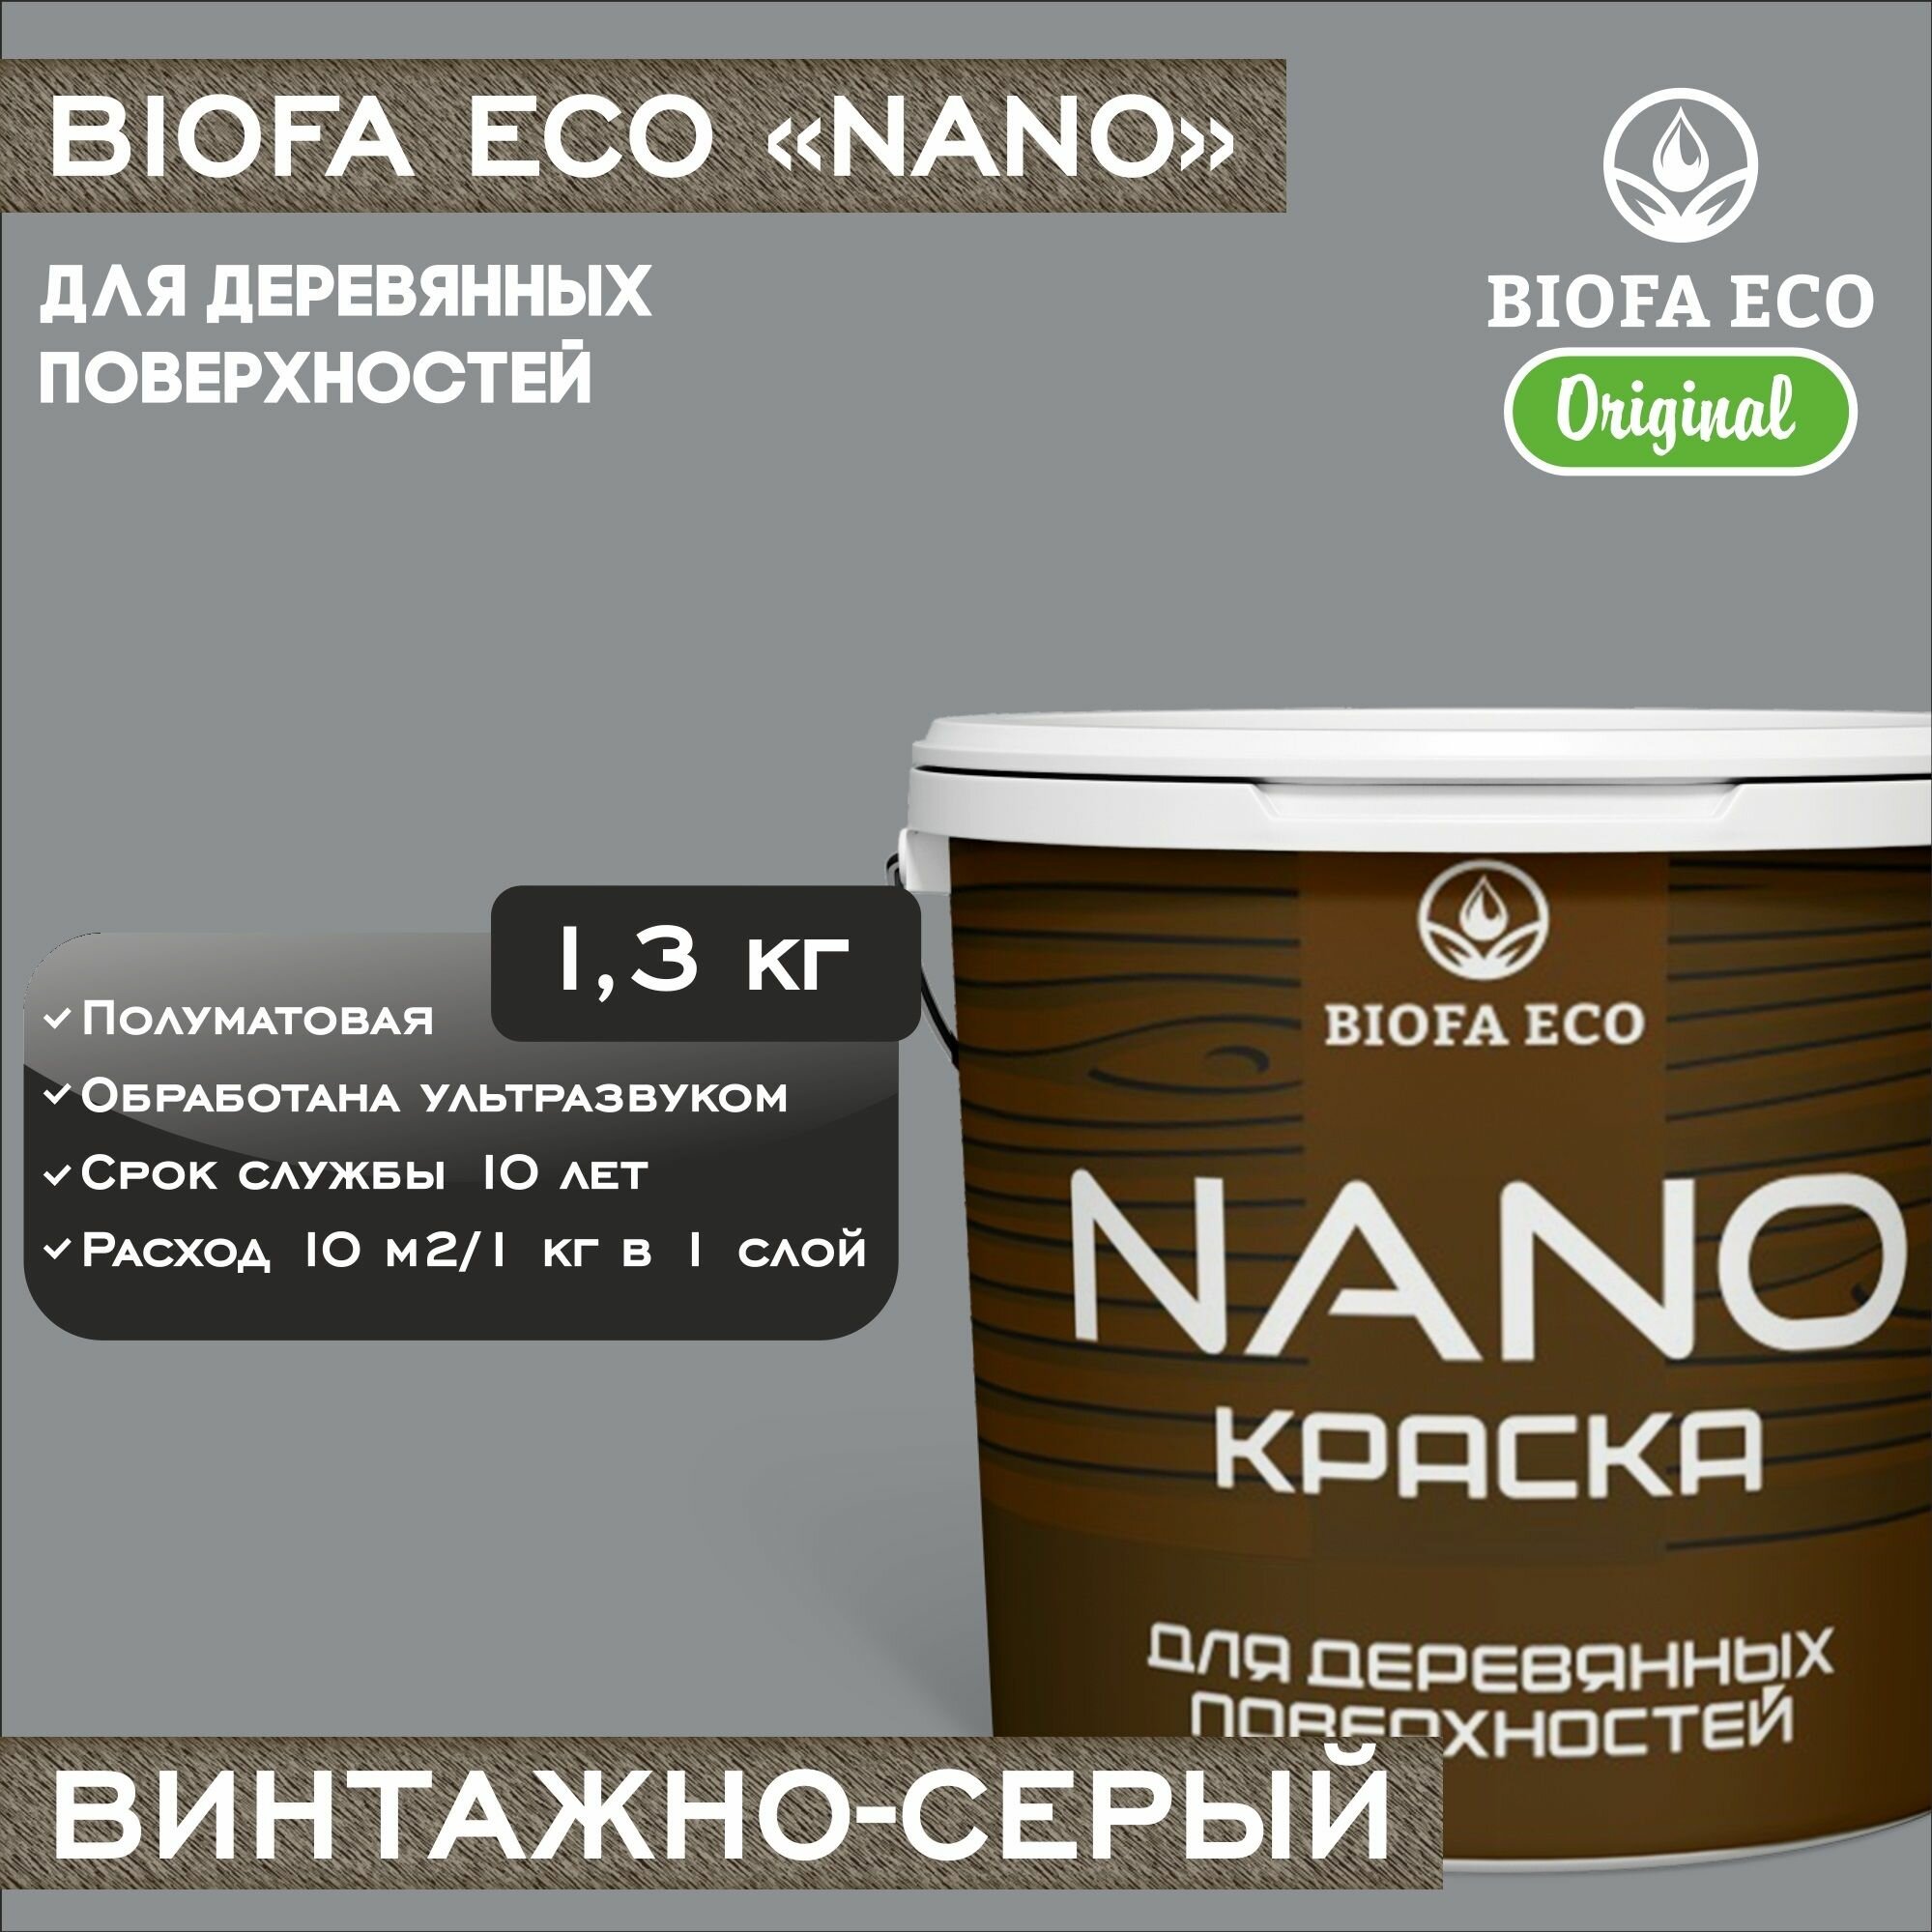 Краска BIOFA ECO NANO для деревянных поверхностей, укривистая, полуматовая, цвет винтажно-серый, 1,3 кг